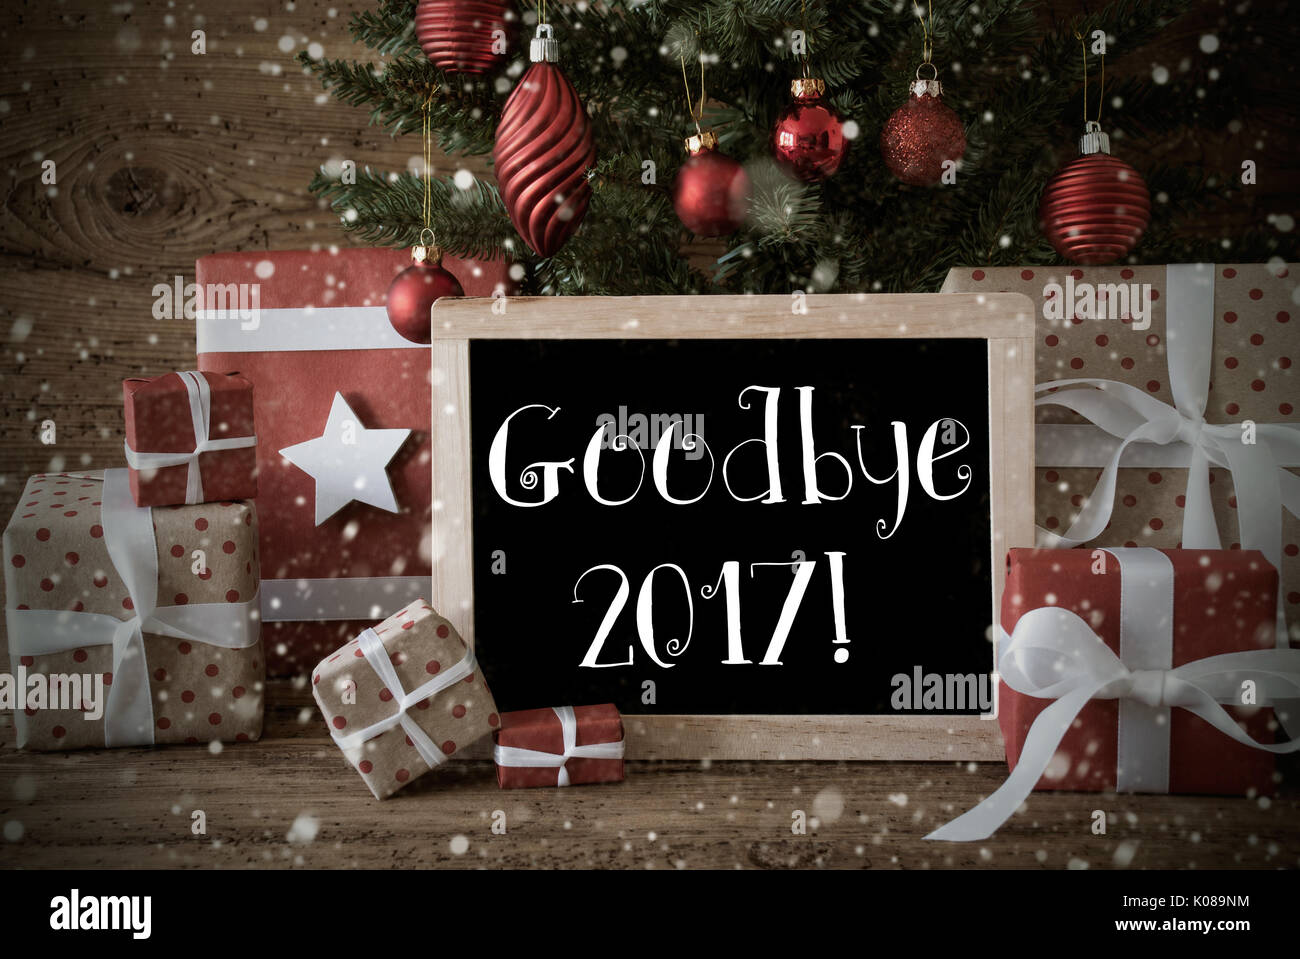 Nostalgic Christmas Tree With Goodbye 2017, Snowflakes Stock Photo